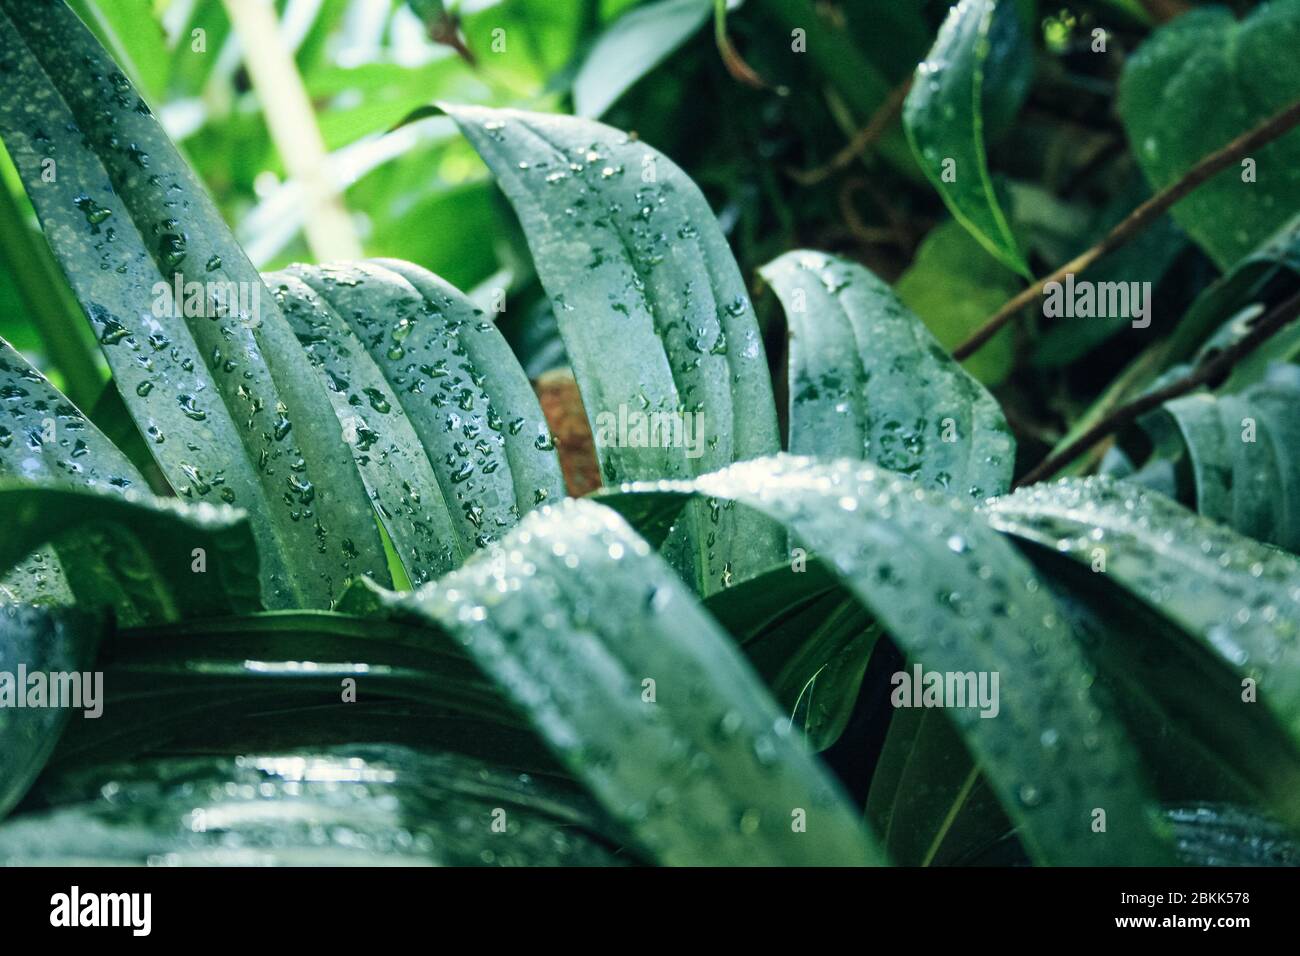 Vue détaillée sur les feuilles tropicales vertes avec gouttes d'eau Banque D'Images